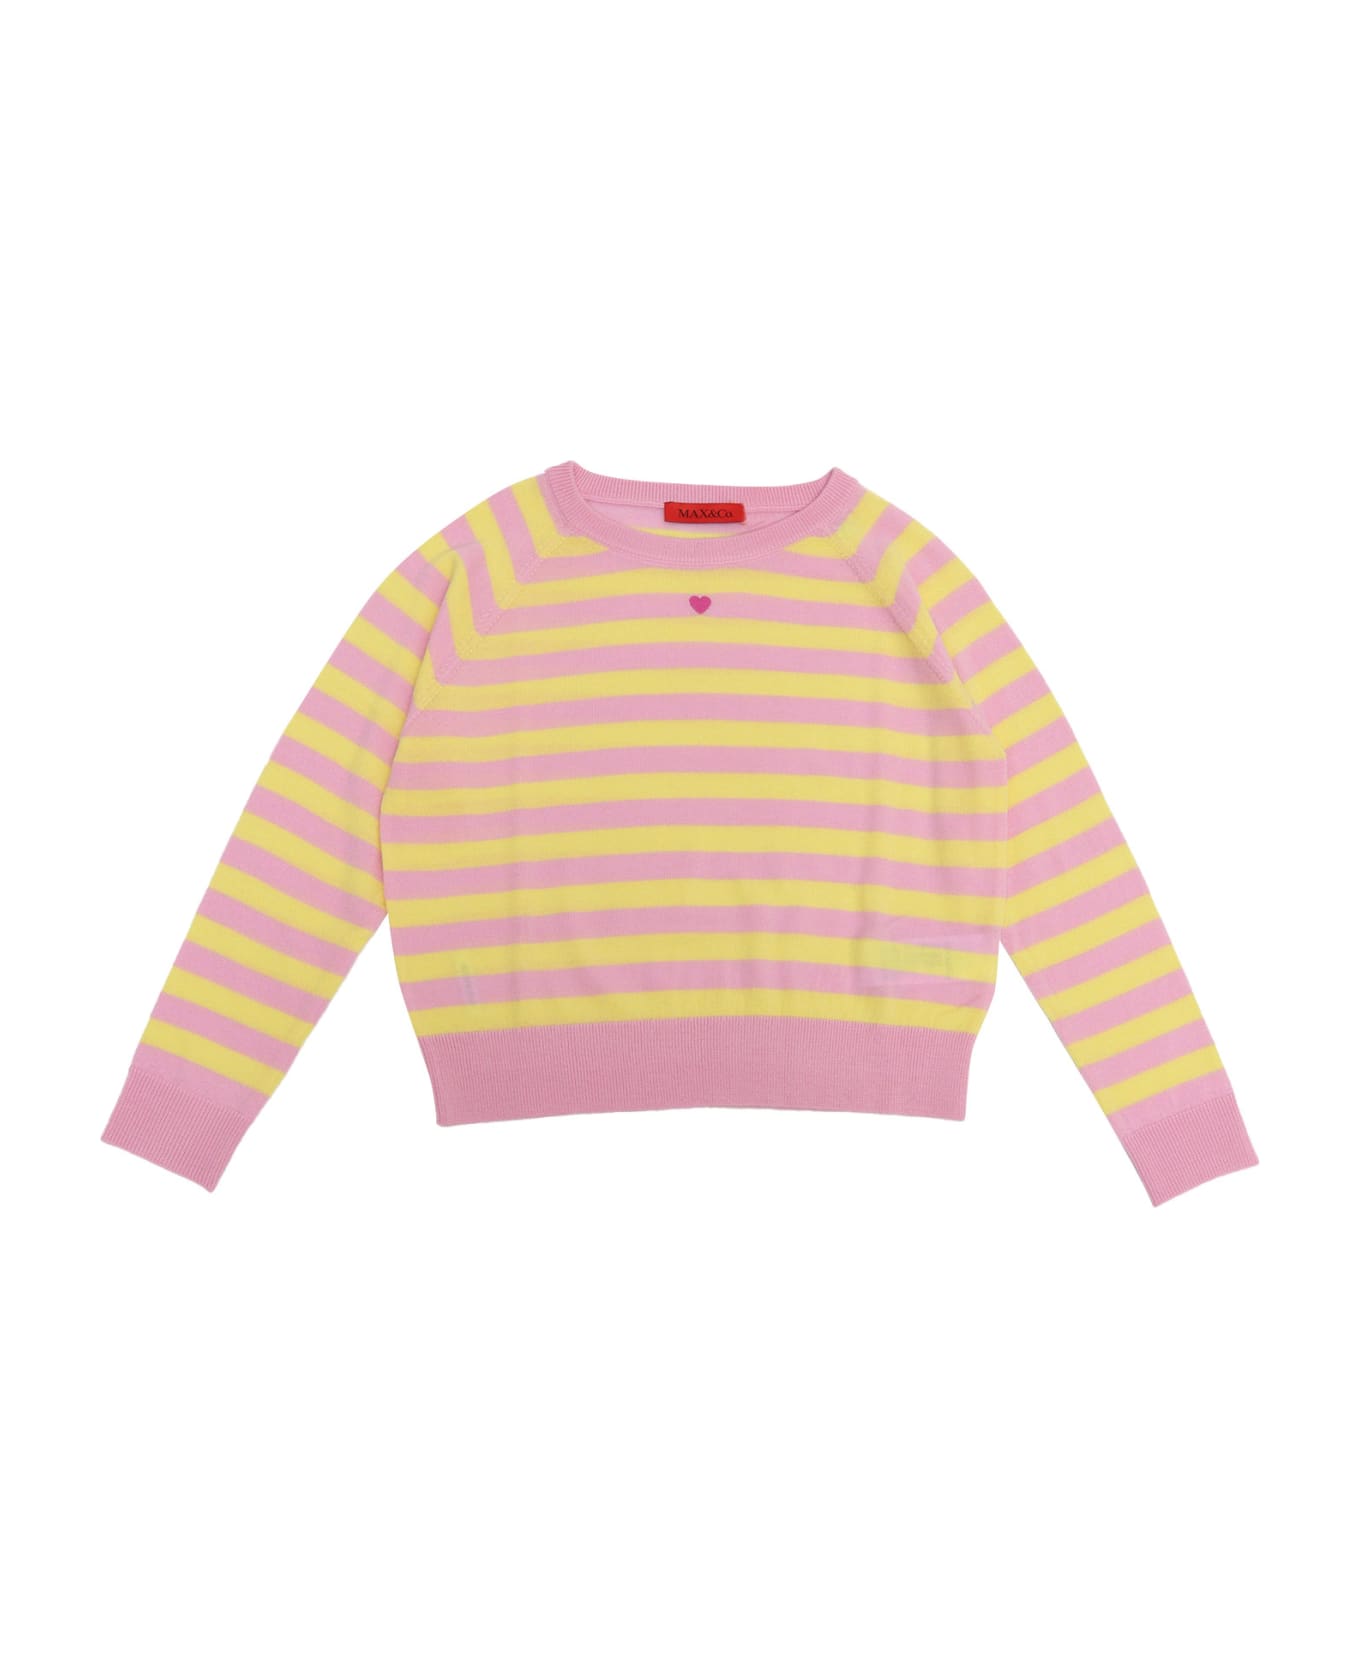 Max&Co. Striped Sweater - PURPLE